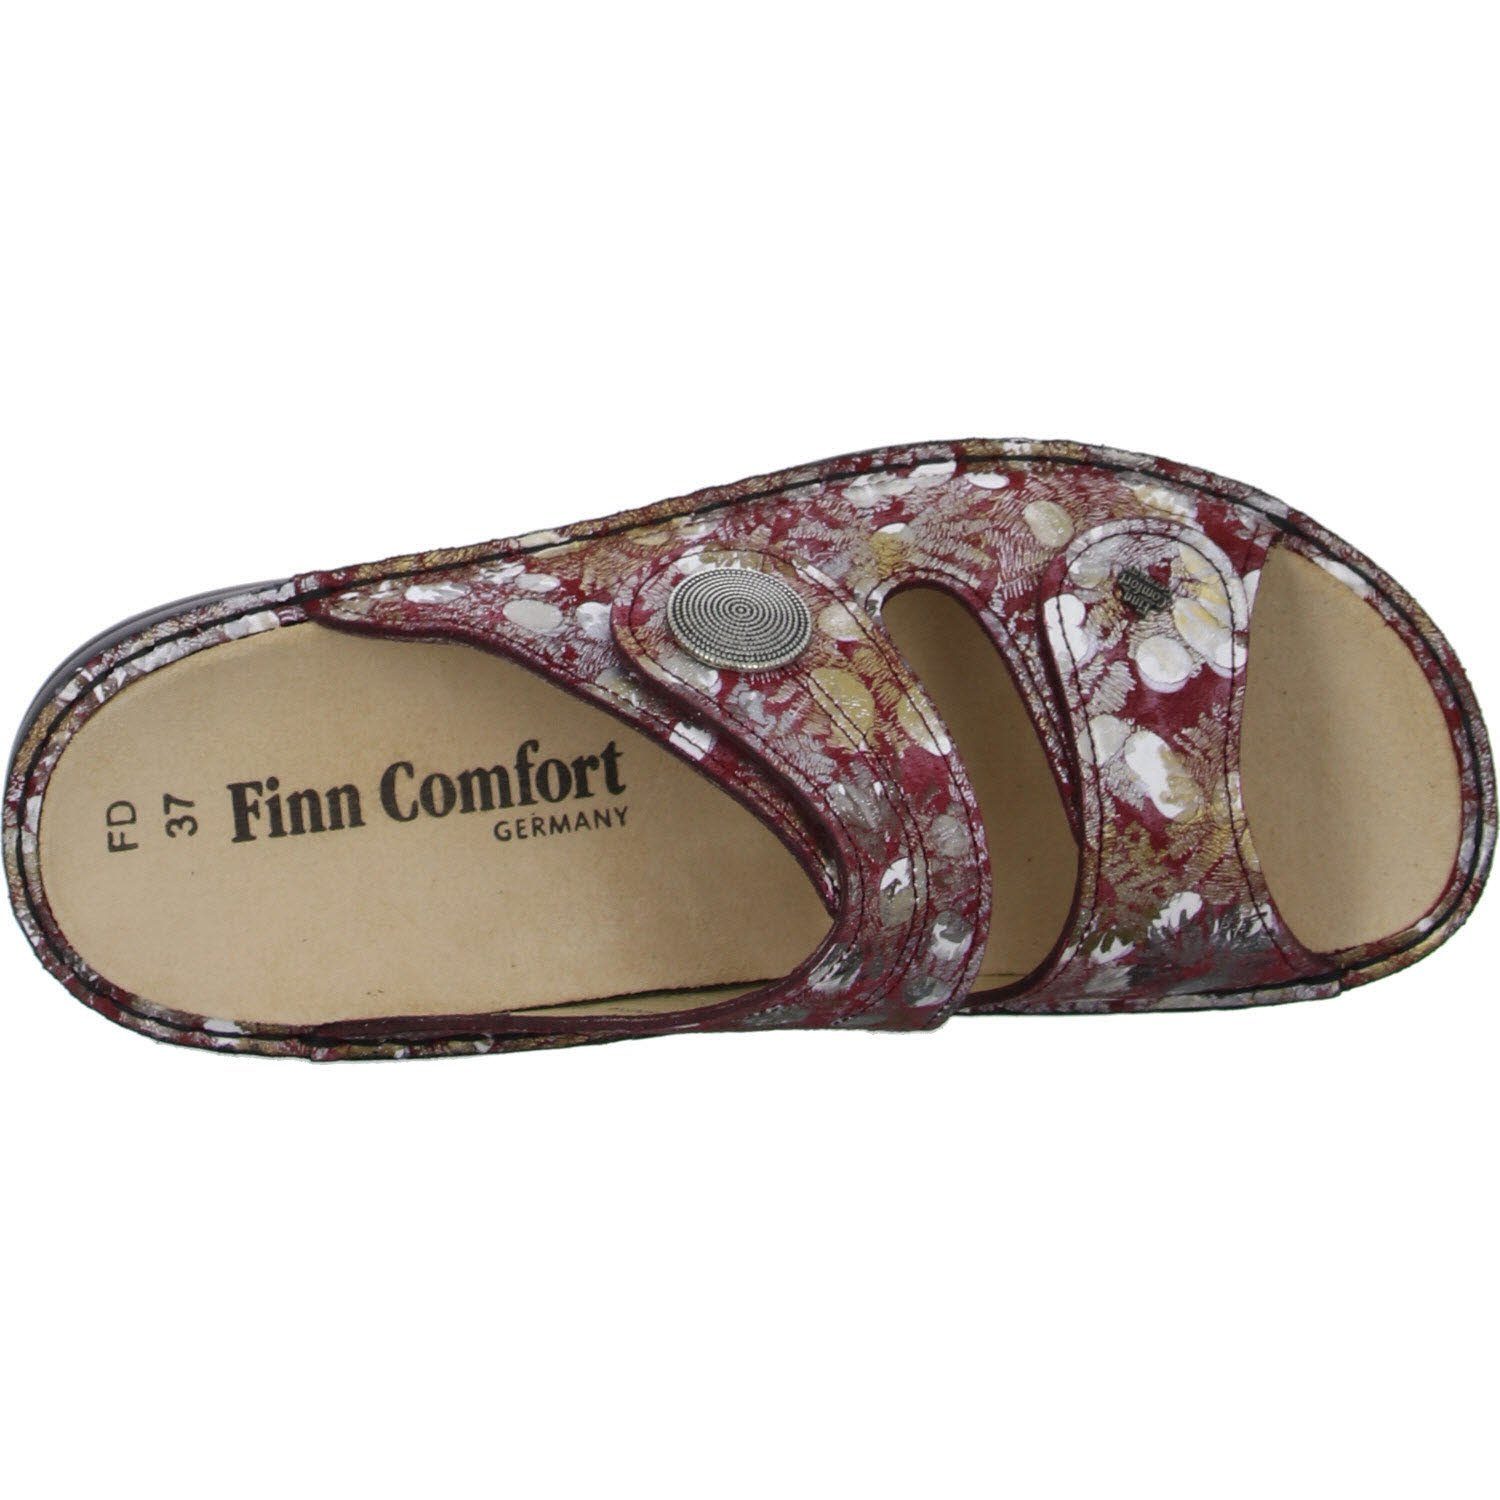 Finn Comfort 02550-109378 Pantolette berry/iris